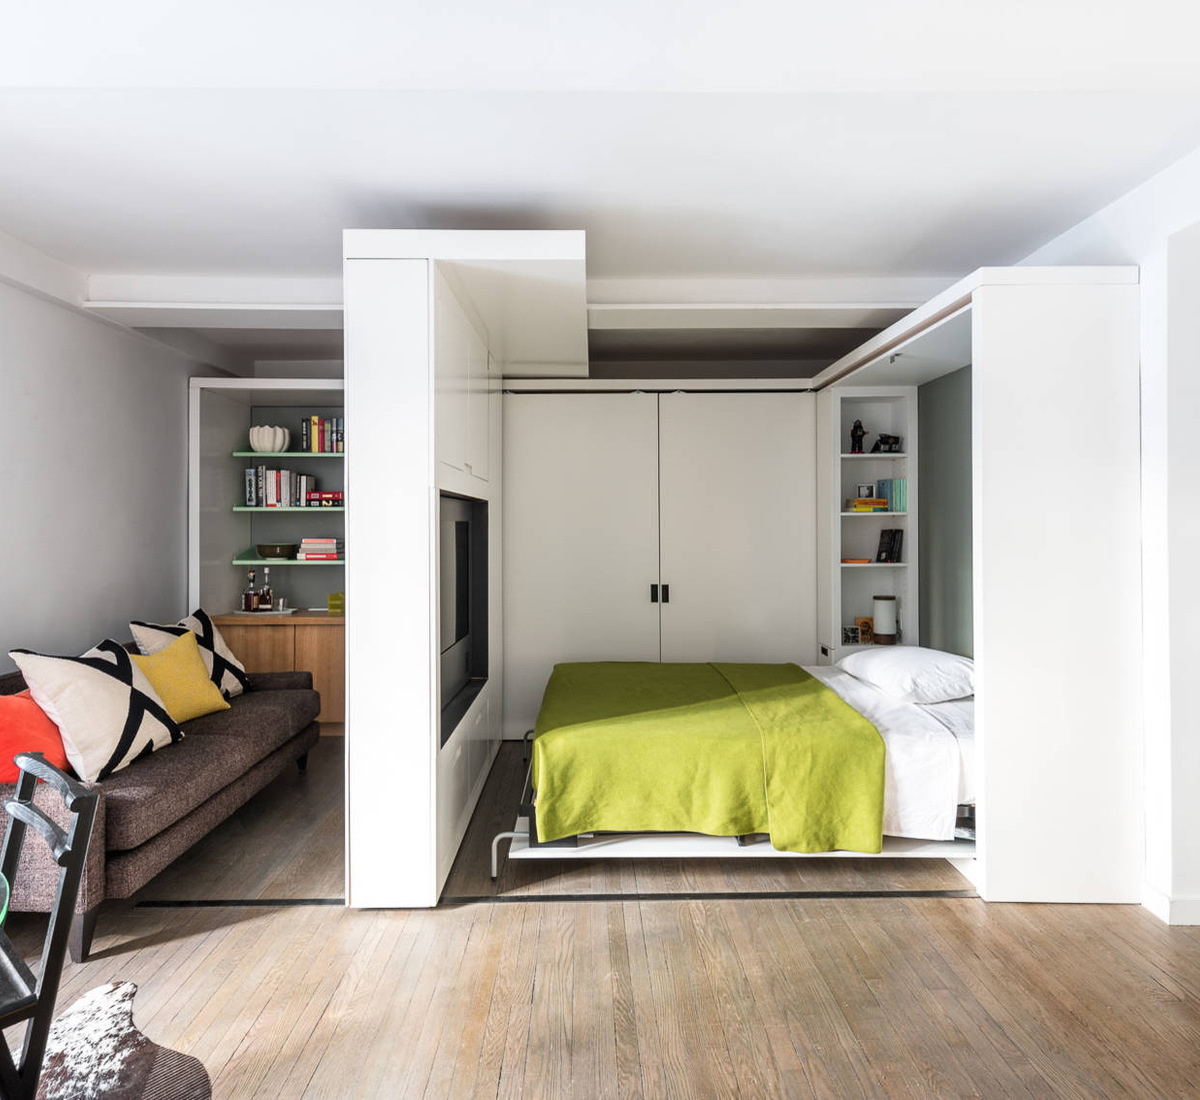 soggiorno e camera da letto nella stessa stanza foto design